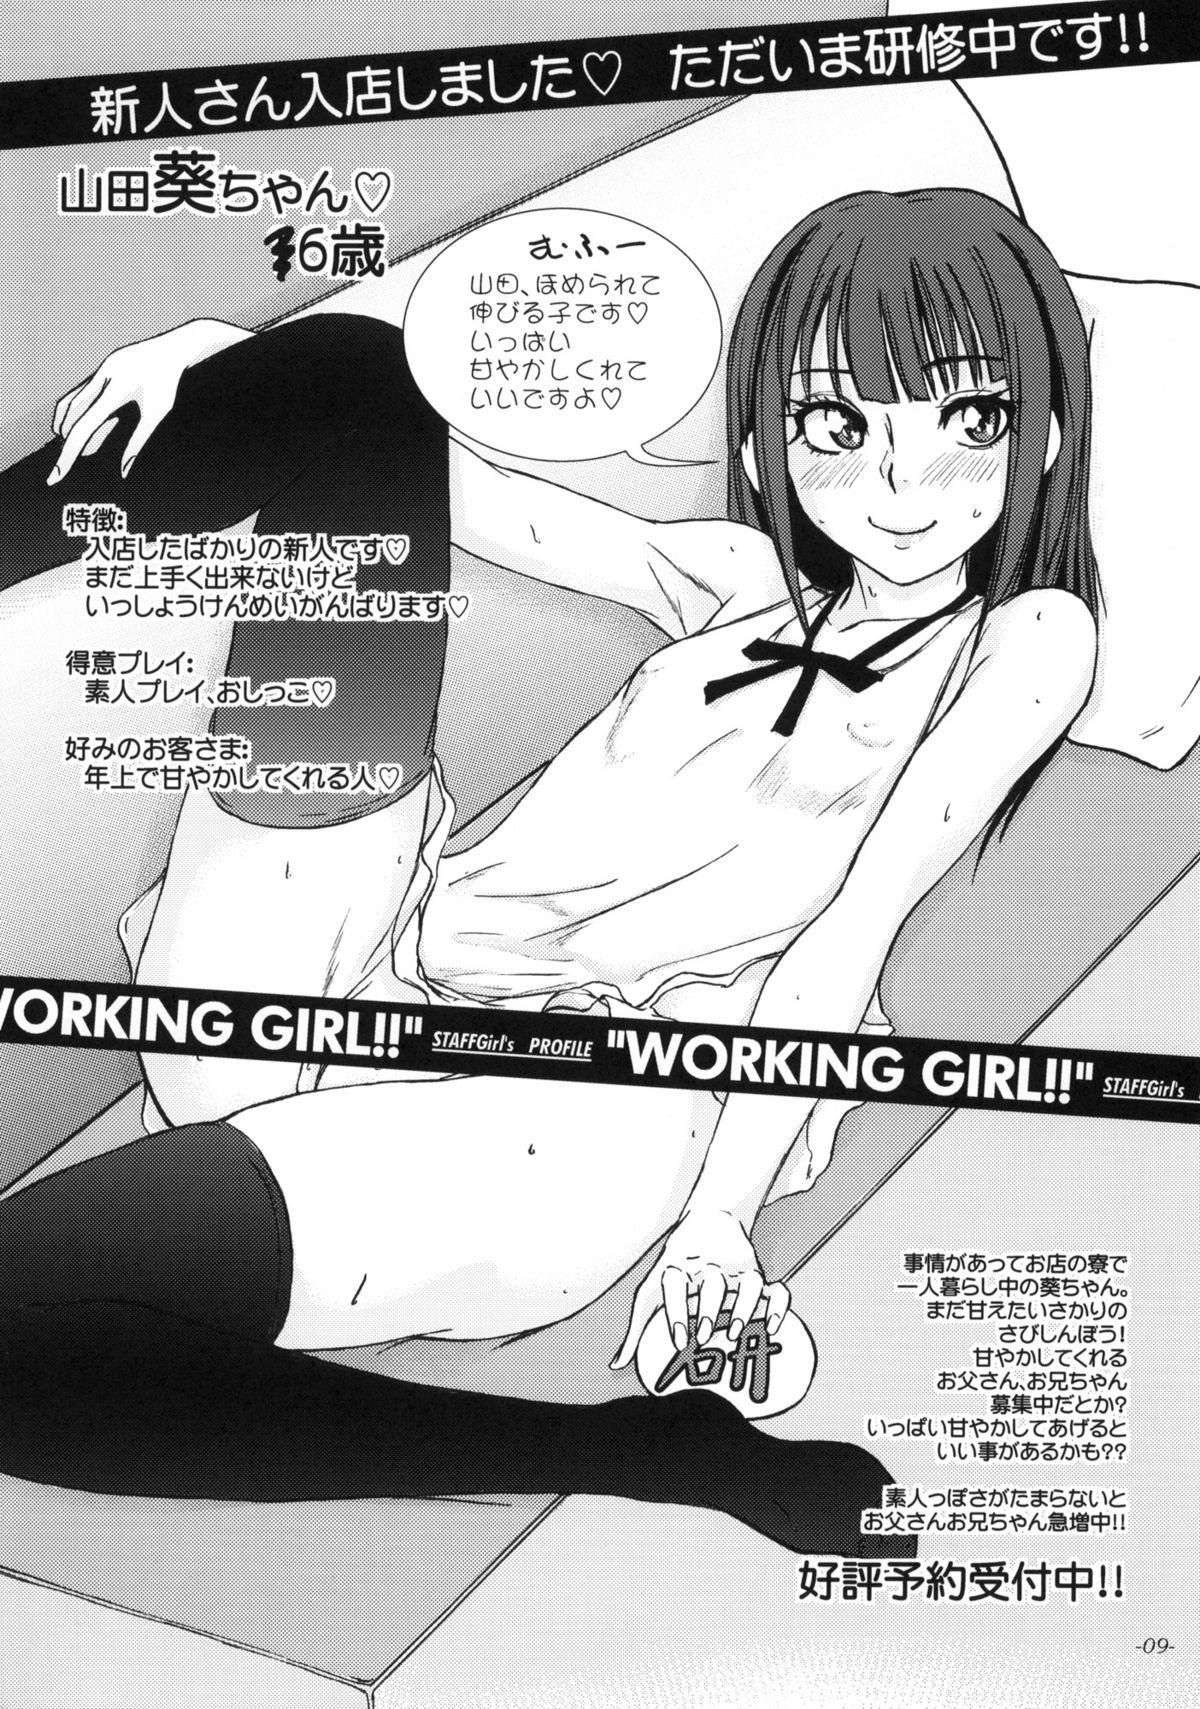 WORKING GIRL!! ranking No 1 Fuuzoku musume Inami Mahiru 9